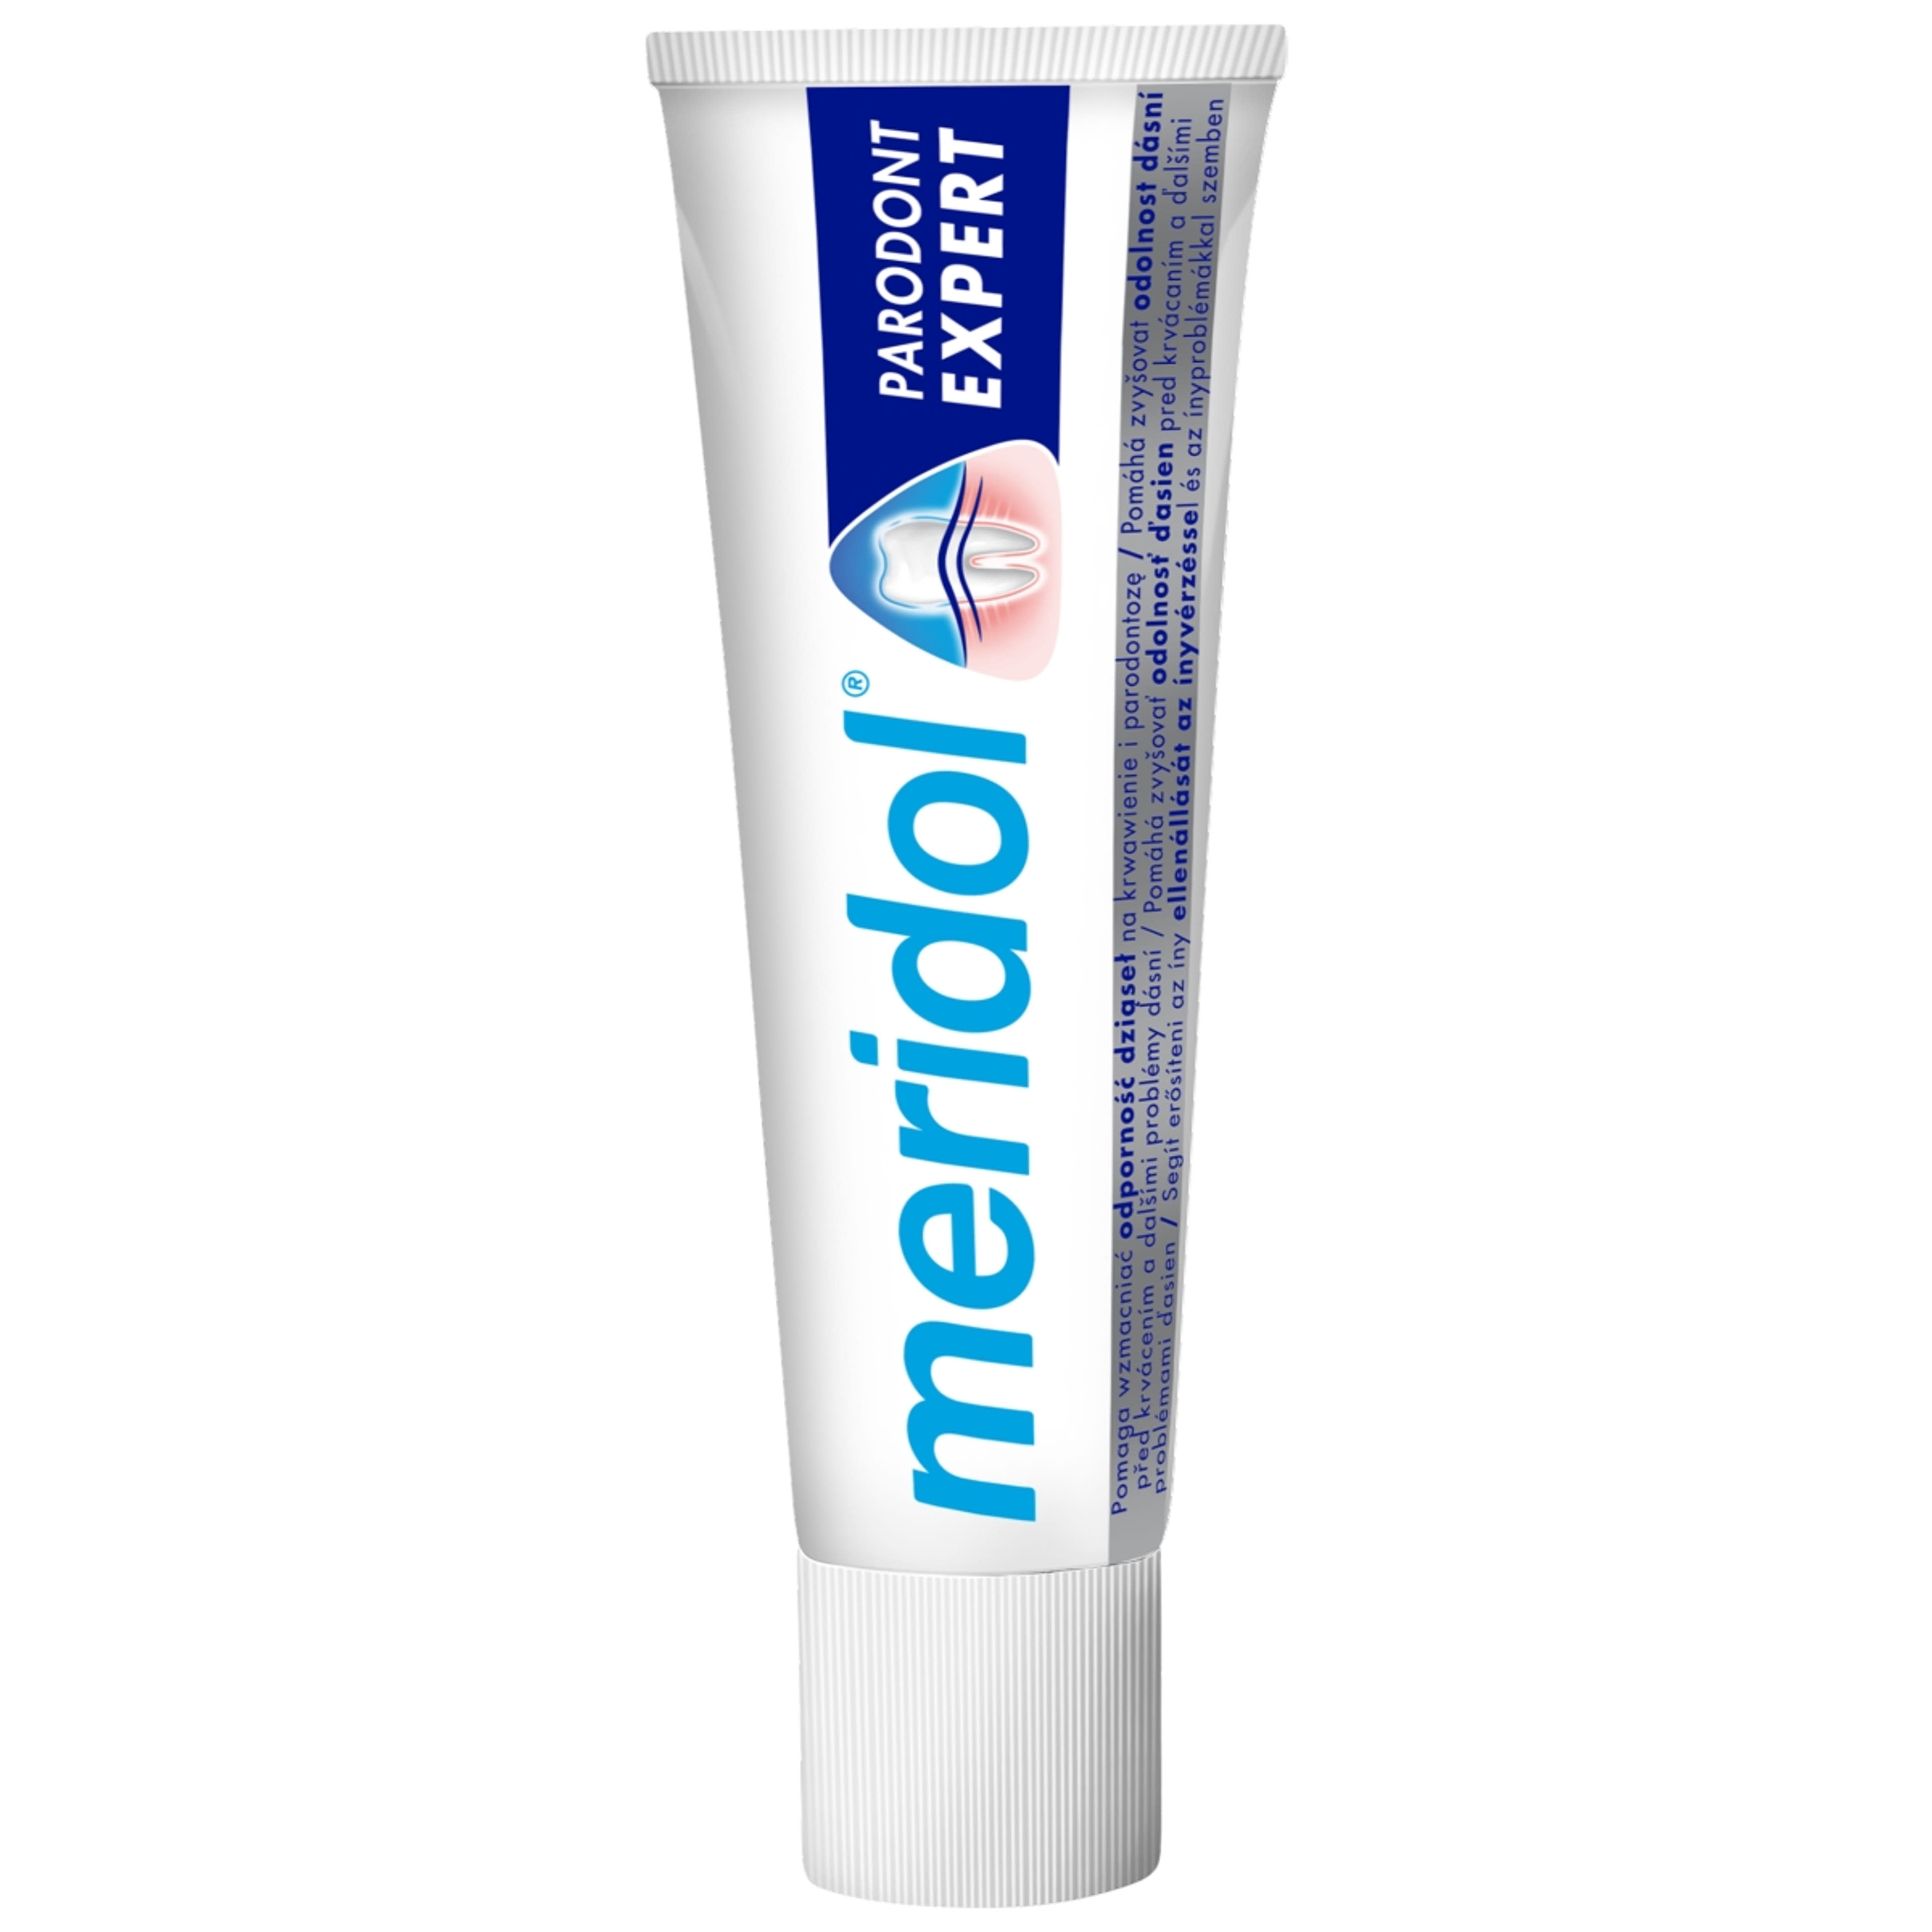 Meridol Paradont Expect fogkrém - 75 ml-2